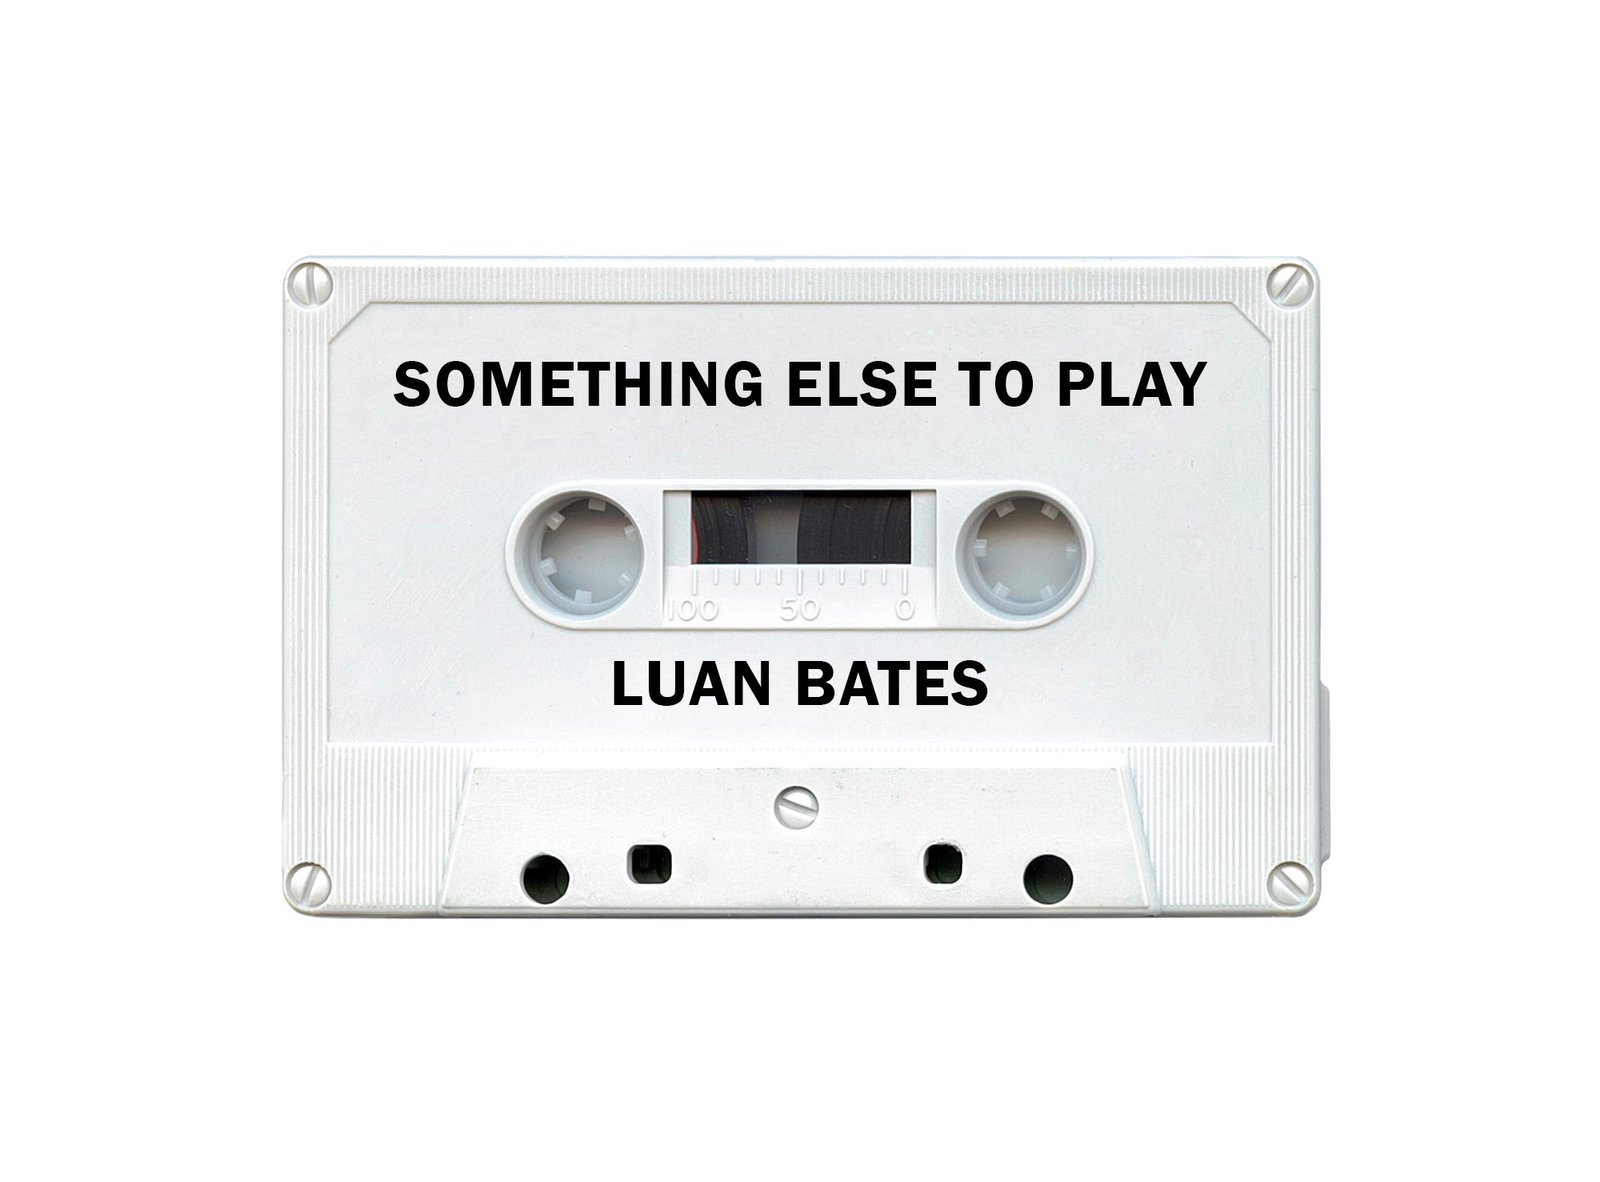 Luan Bates lança EP com 5 faixas entre arranjos acústicos e elétricos